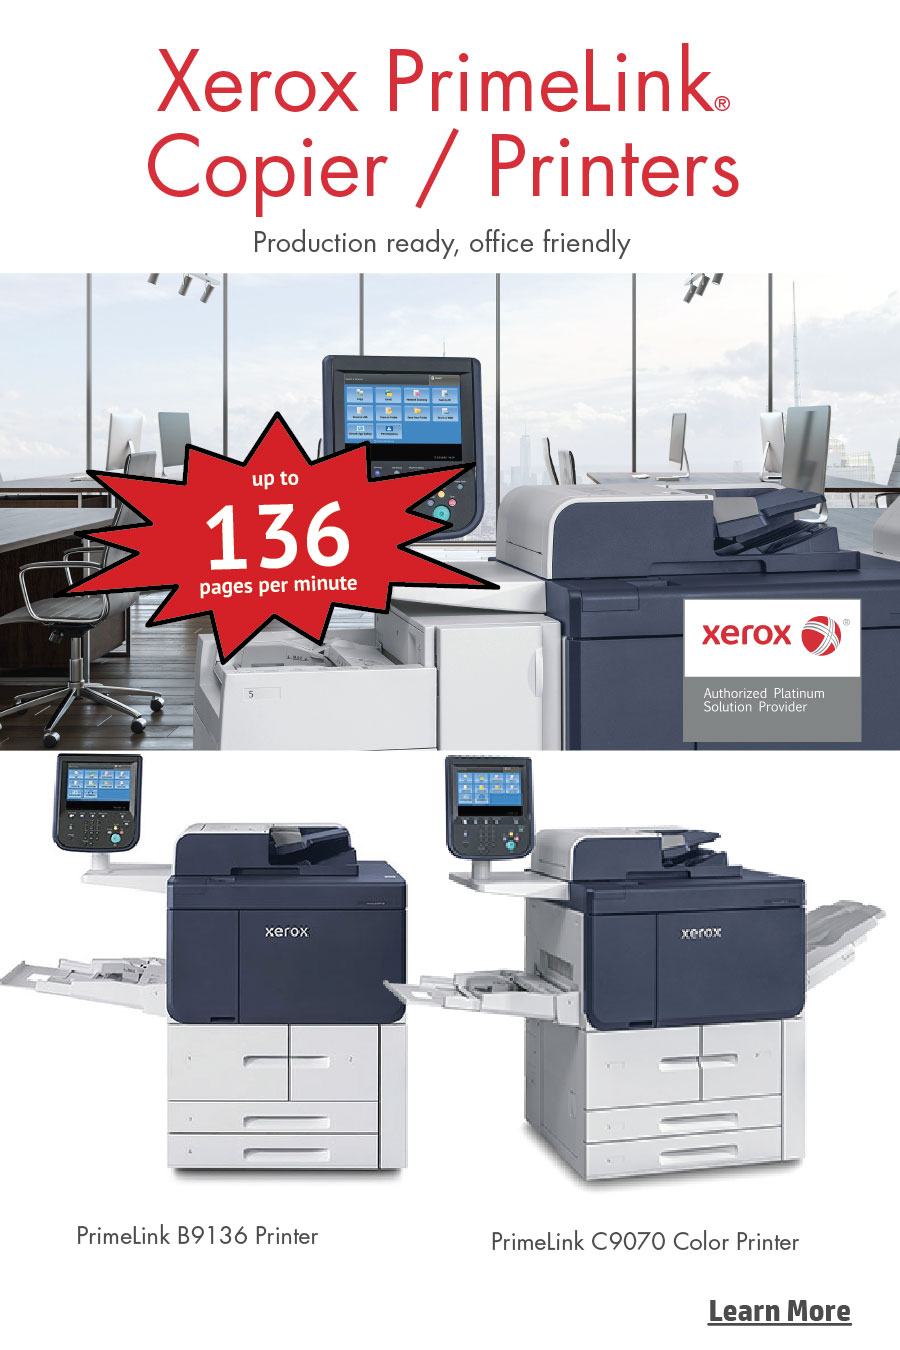 Xerox PrimeLink Printers